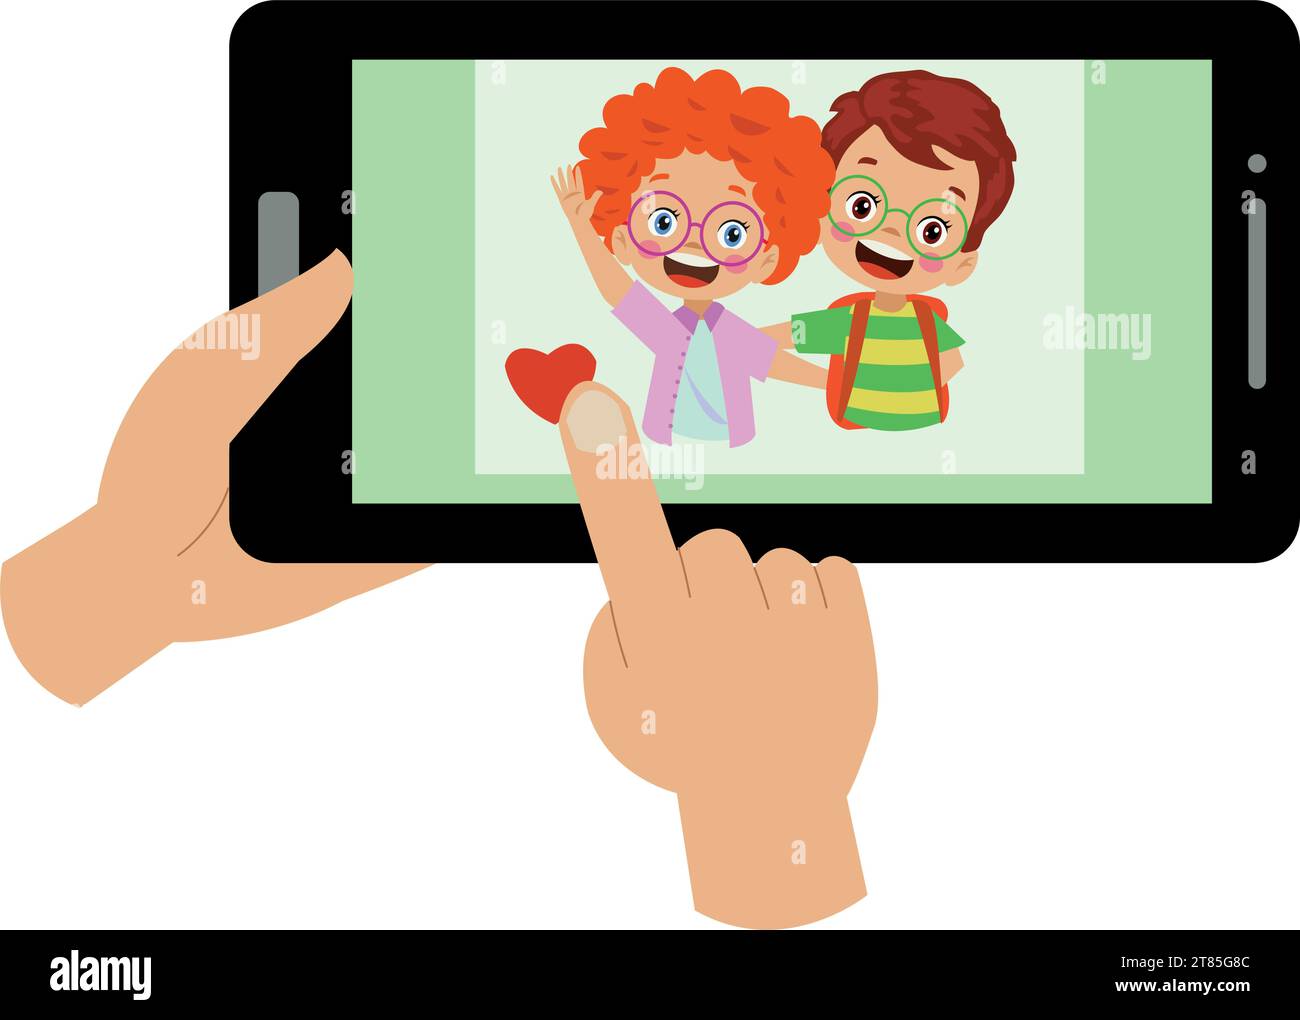 Videokonferenz. Niedliches kleines Kind, das ein Tablet für Videogespräche mit einem Freund verwendet. Kinder glücklich lächeln mit Internet-Technologie zum Sprechen. Mädchengesicht auf sc Stock Vektor